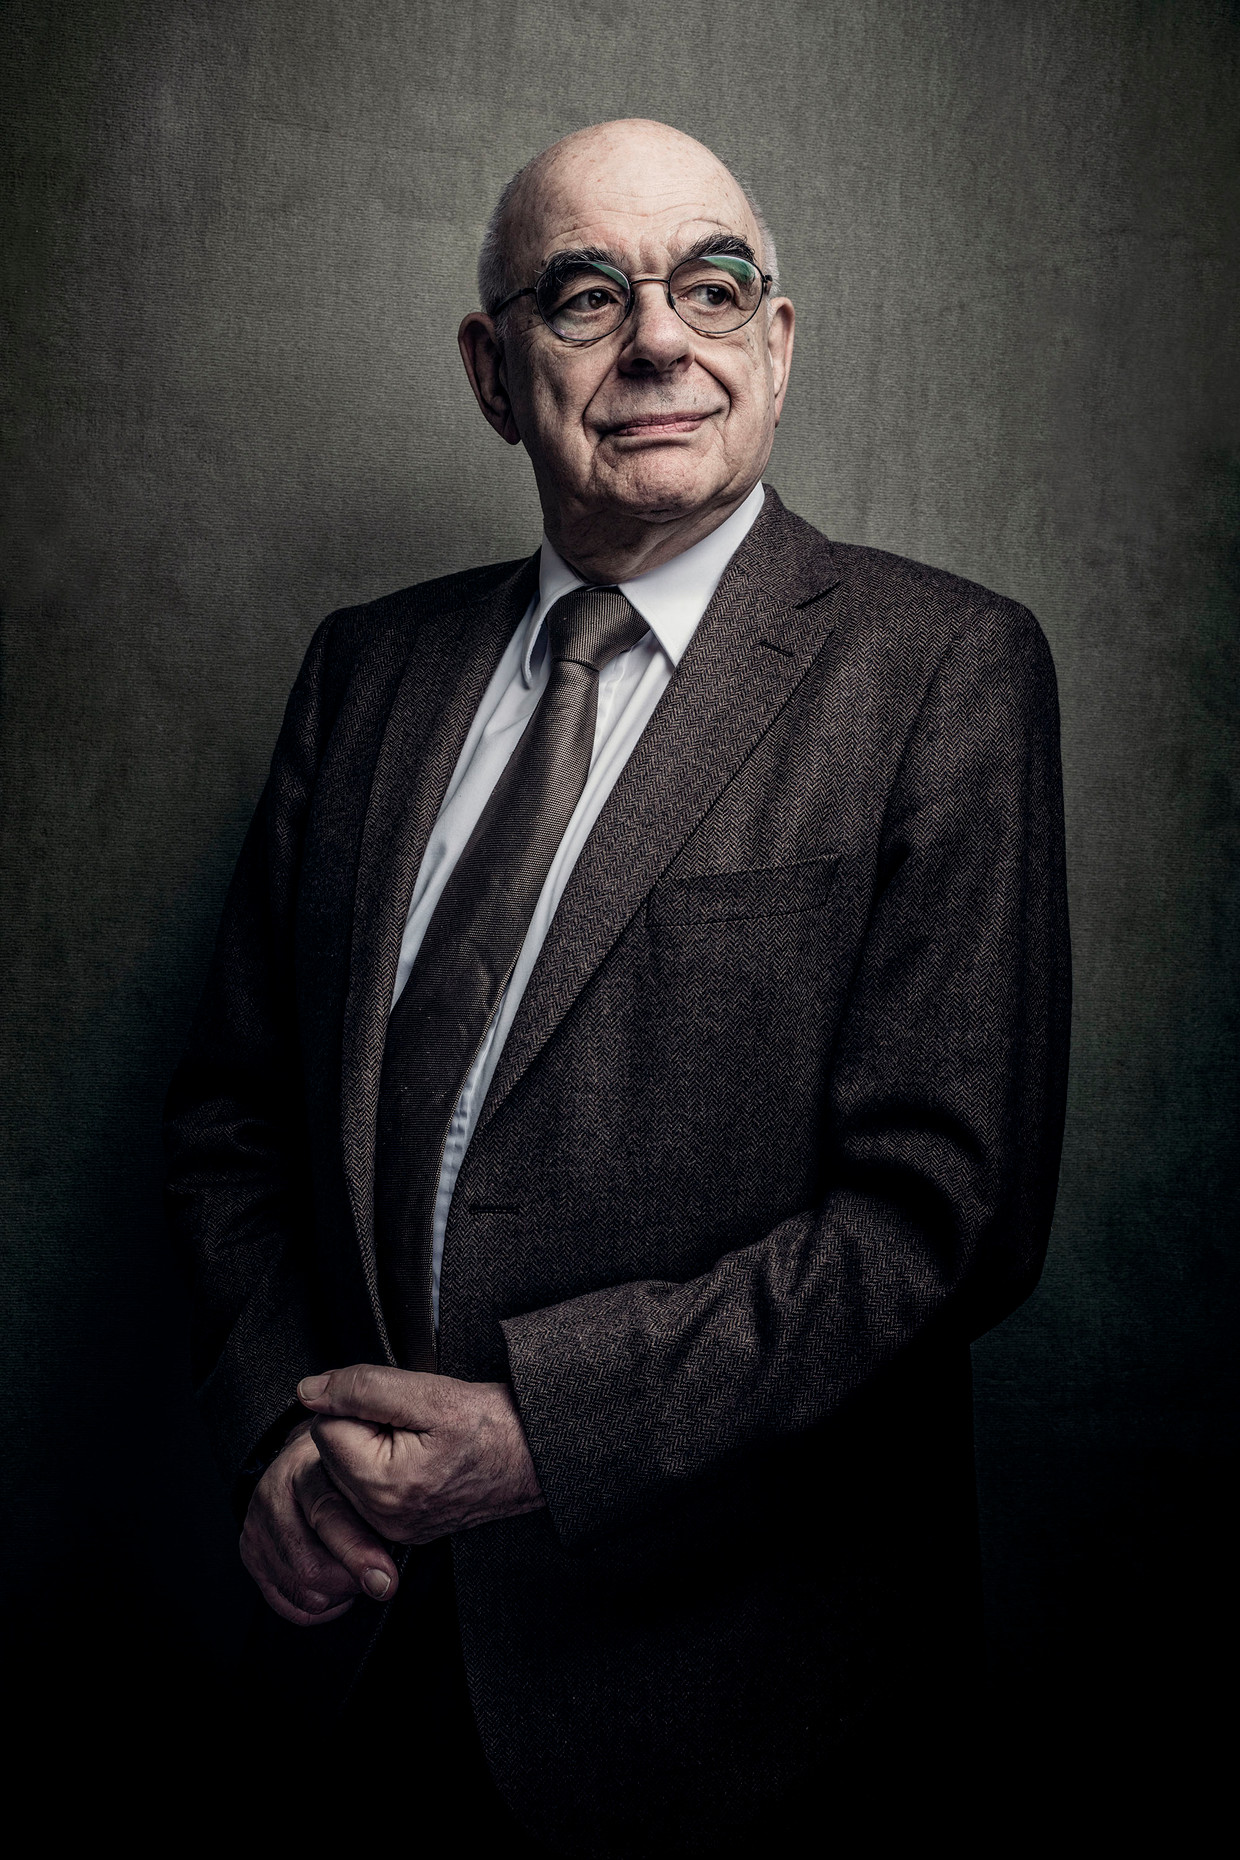 Verwonderlijk Oud-minister Jan Pronk: 'We denken alleen maar aan onszelf' | De LI-05